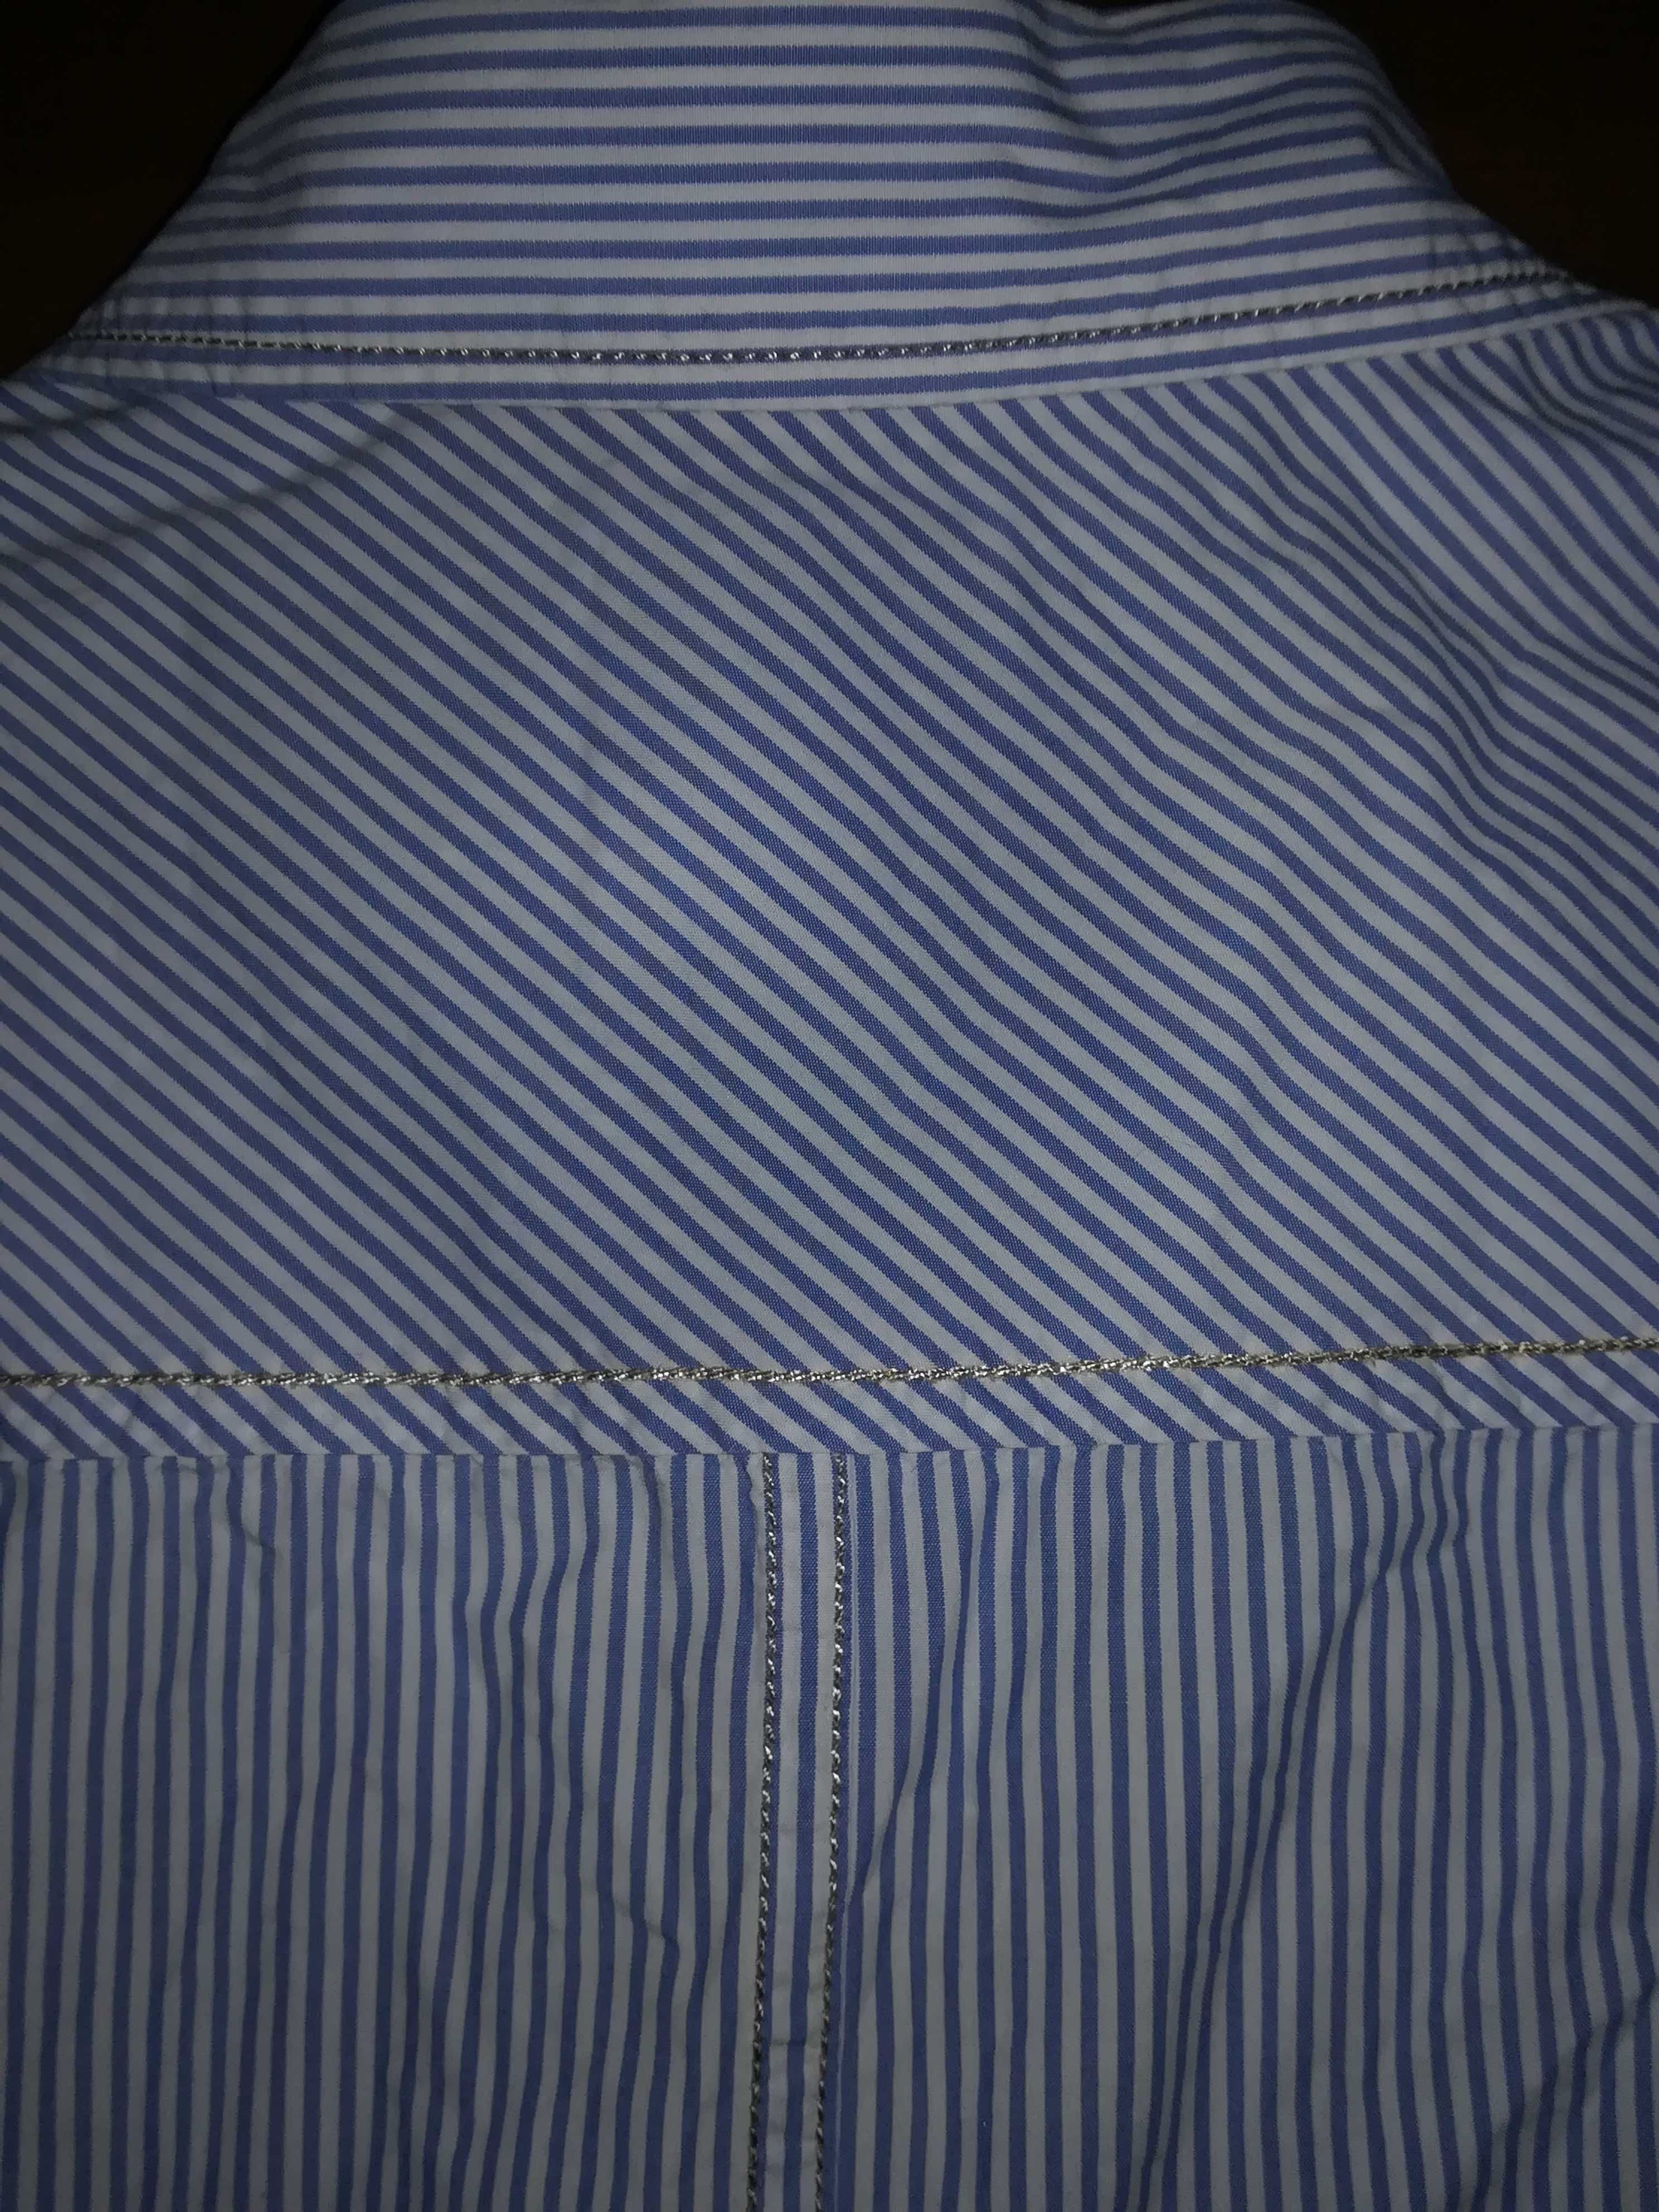 XL Męska koszula z krótkim rękawem COTTONFIELD w paski prążki